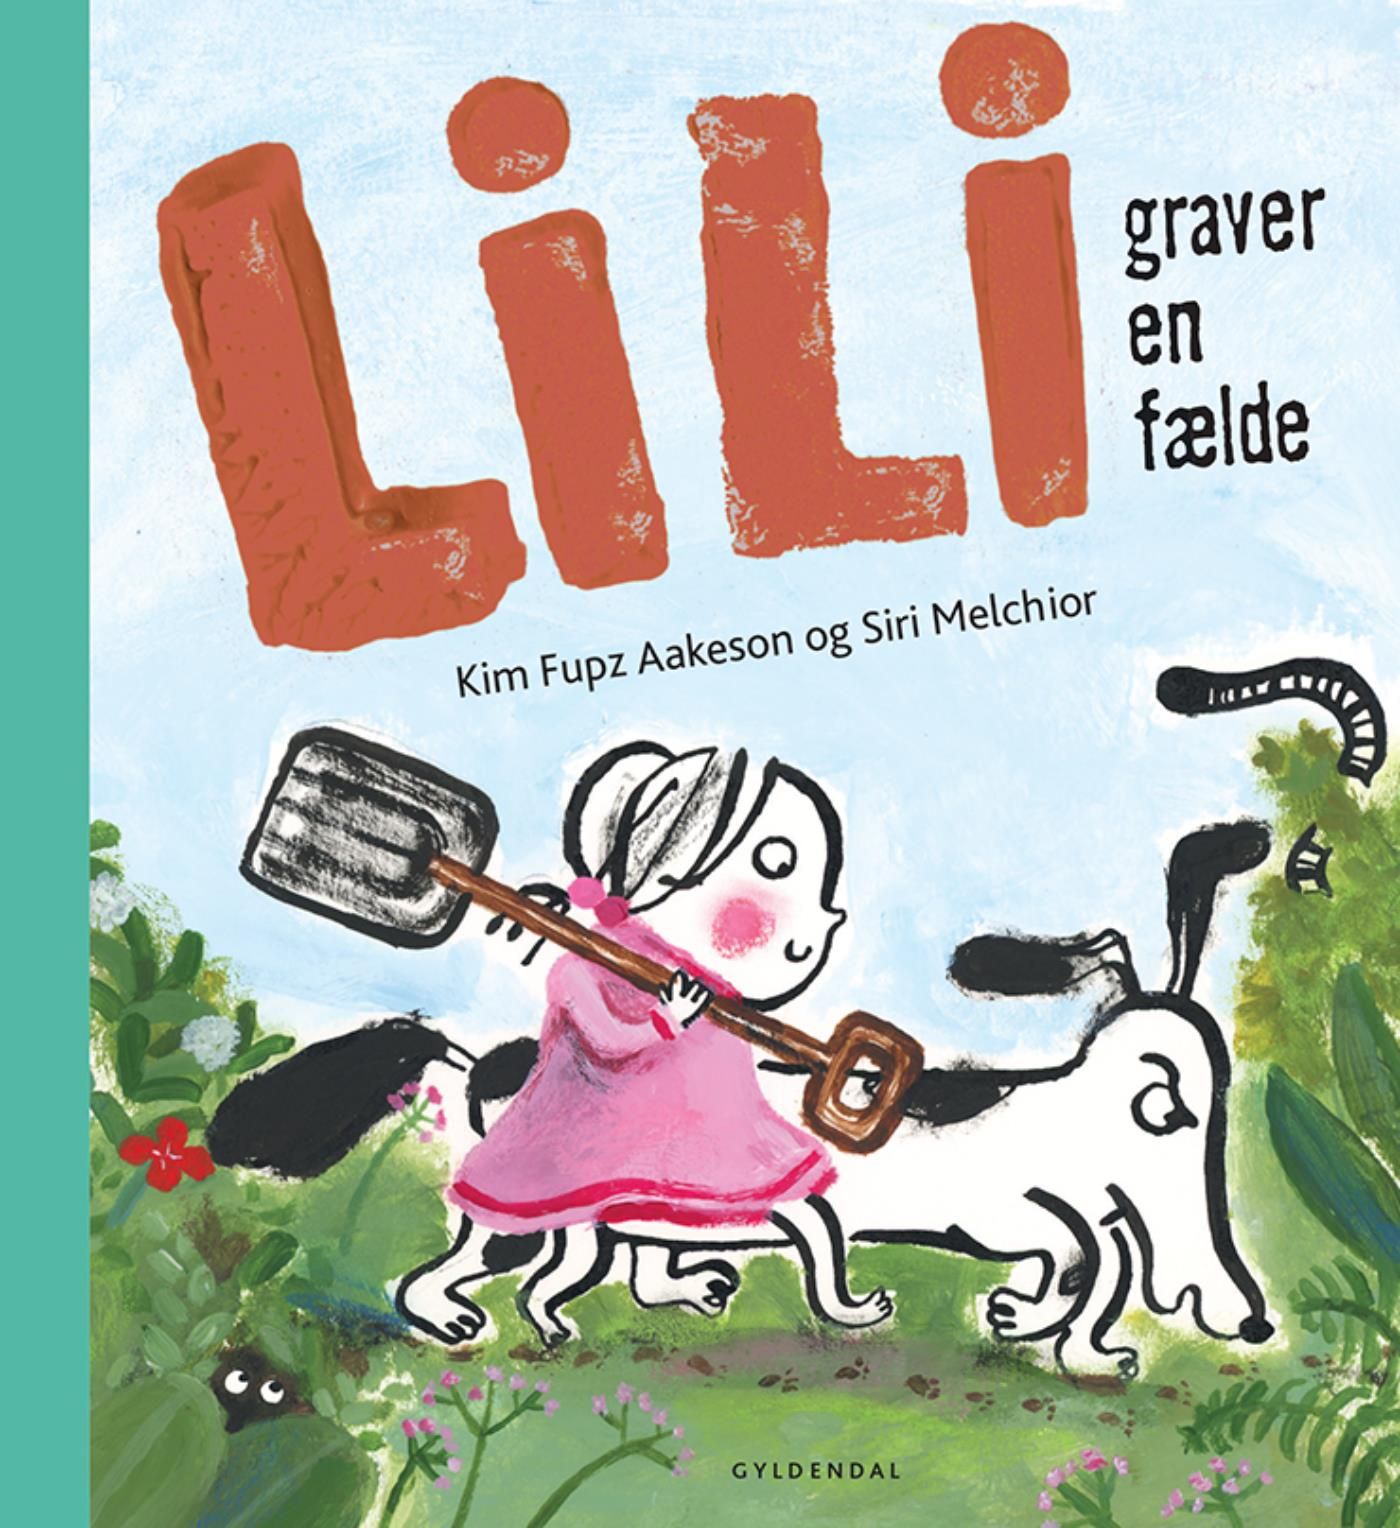 Lili graver en fælde - Lyt&læs, e-bog af Siri Melchior, Kim Fupz Aakeson